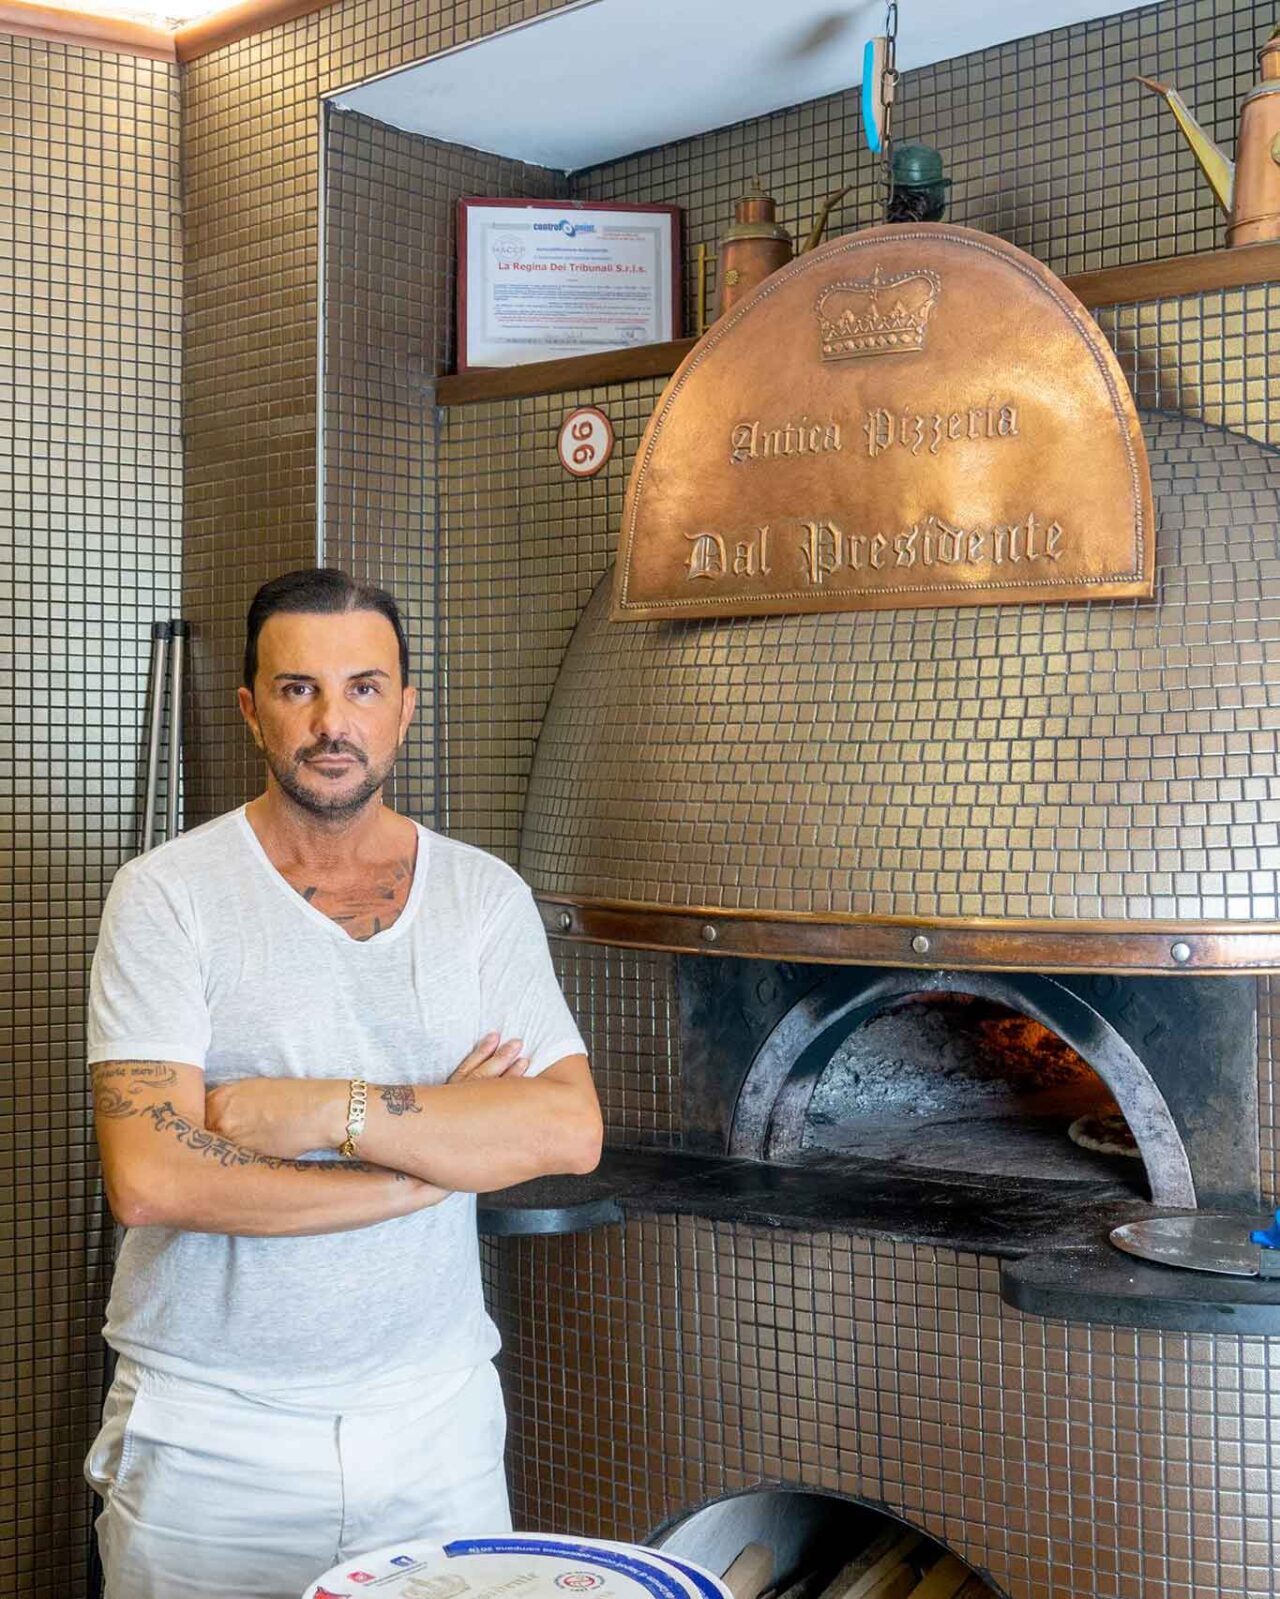 Massimiliano Di Caprio della pizzeria Dal Presidente sequestrata a Napoli